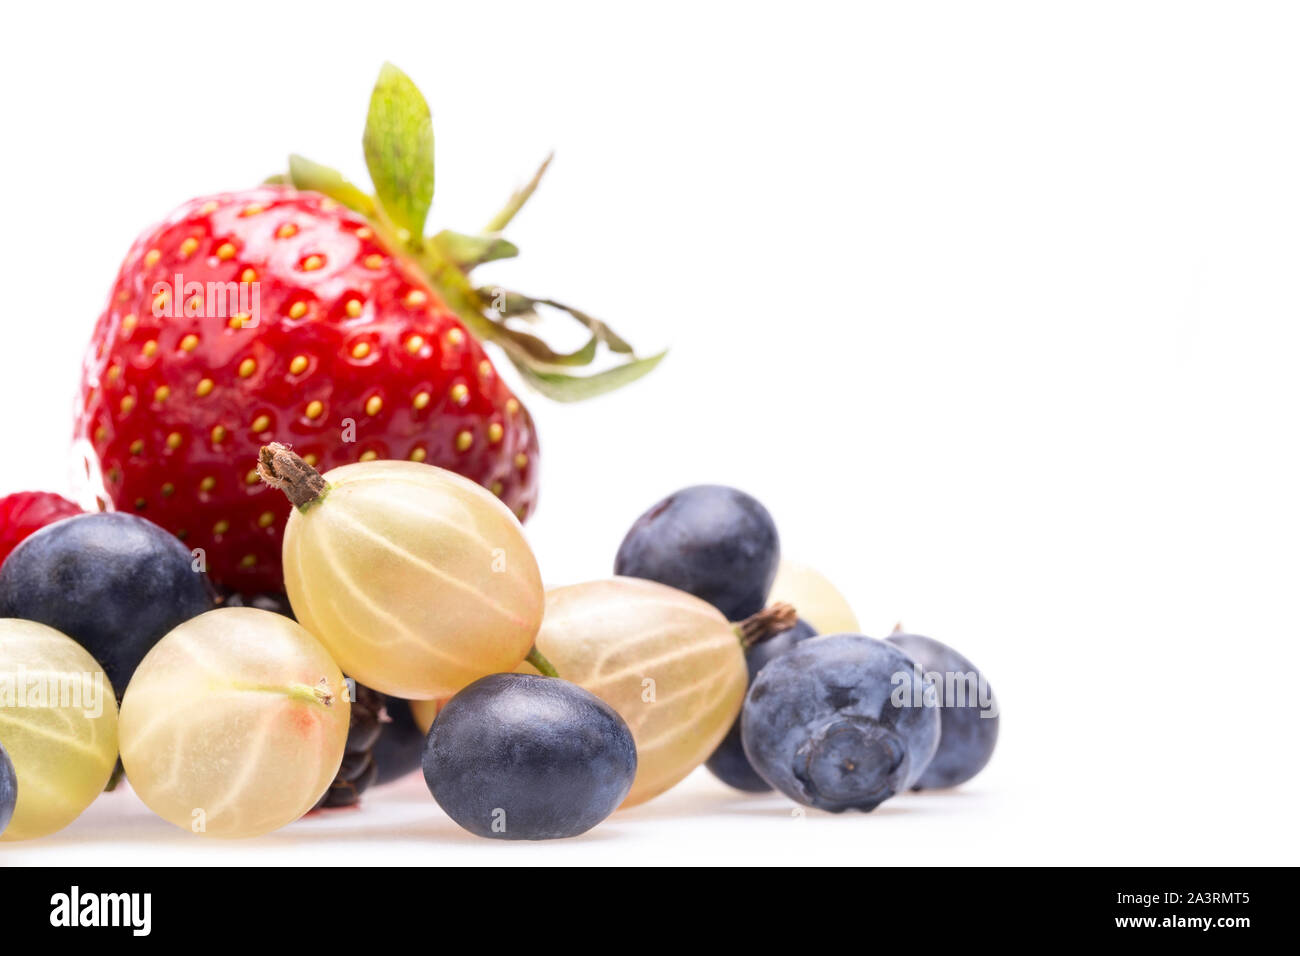 Eine Sammlung von Sommer Beeren, Erdbeeren, Heidelbeeren, Stachelbeeren und Himbeeren. Stockfoto